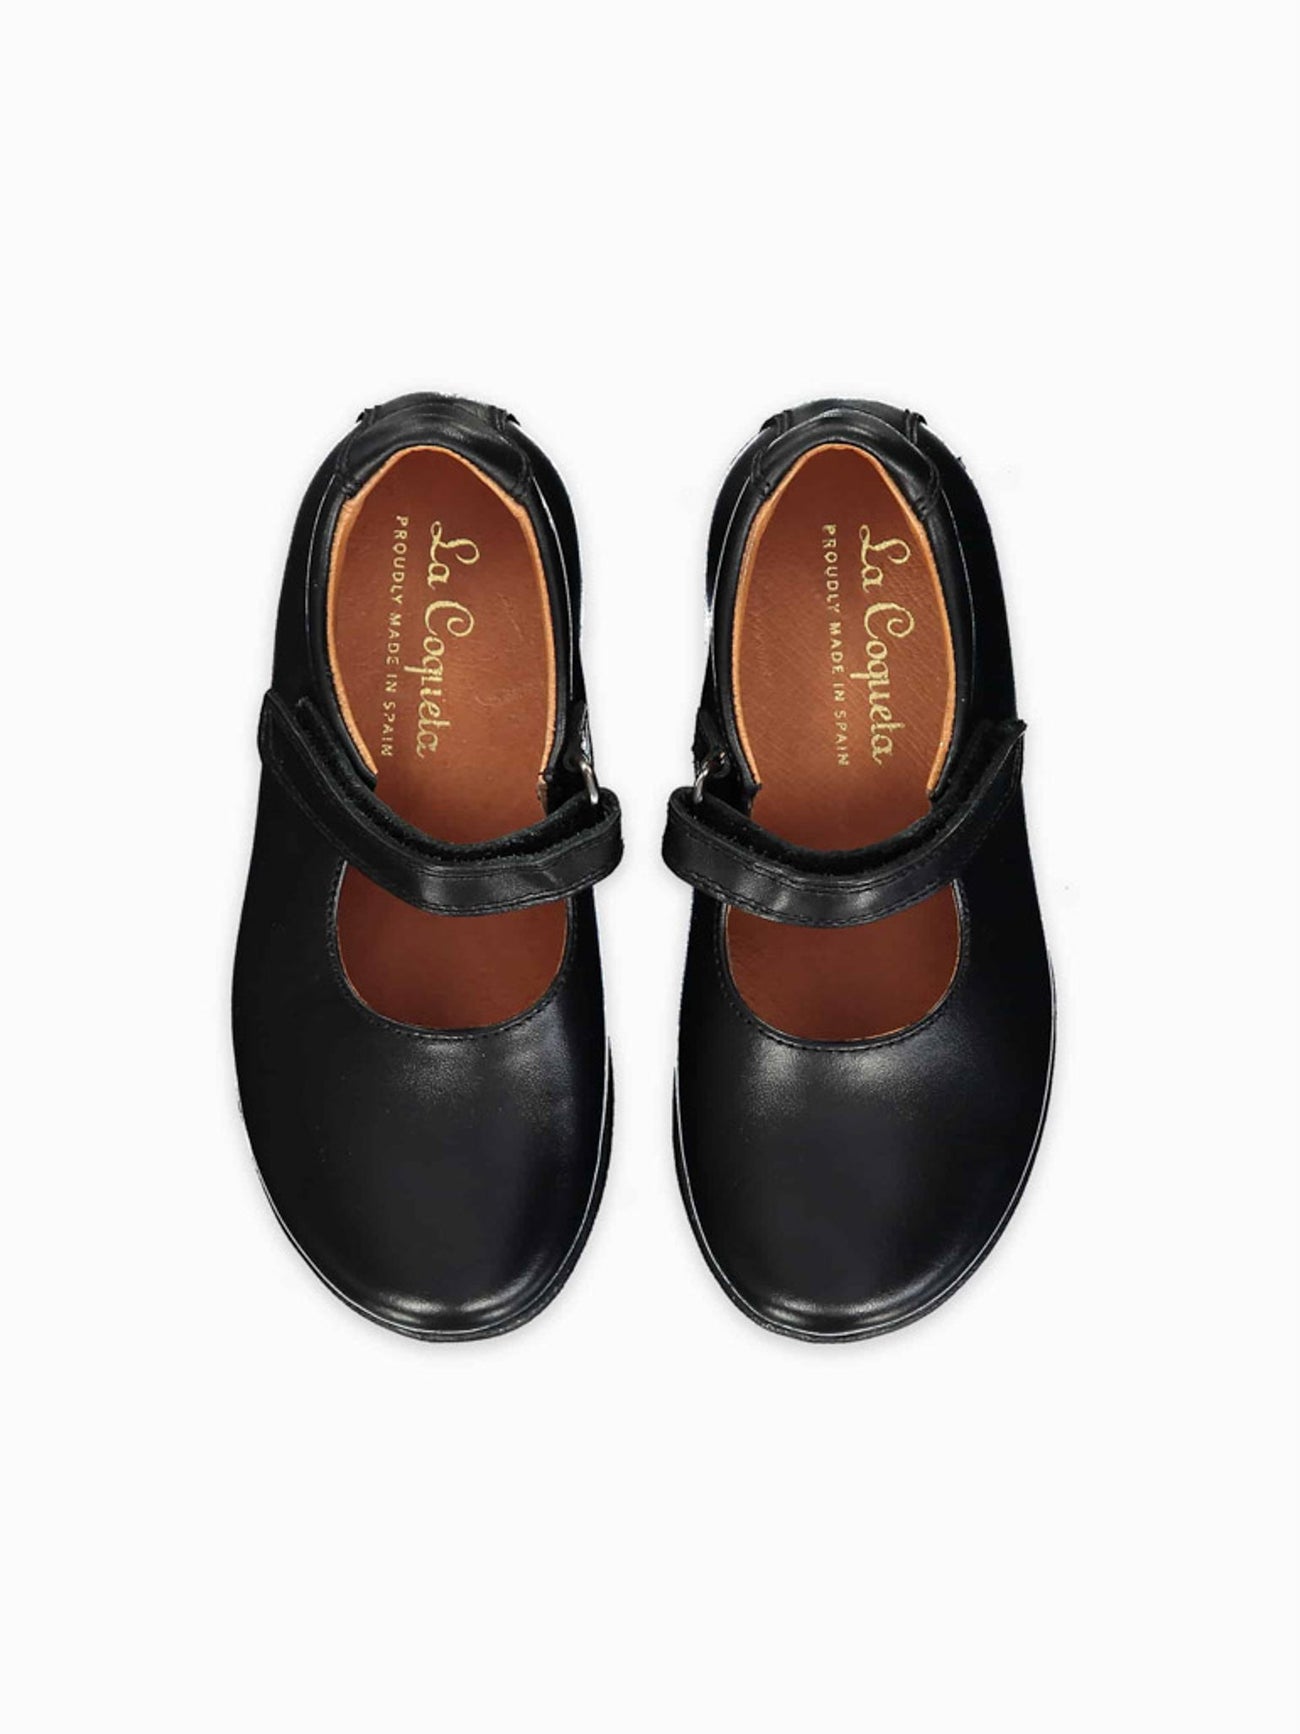 Lovskoo Girls Closed Toe School Uniform Shoes Dress Shoes Strap Formal Slip-On  Princess Leather Shoes (Toddler, Little Kid, Big Kid) Black 